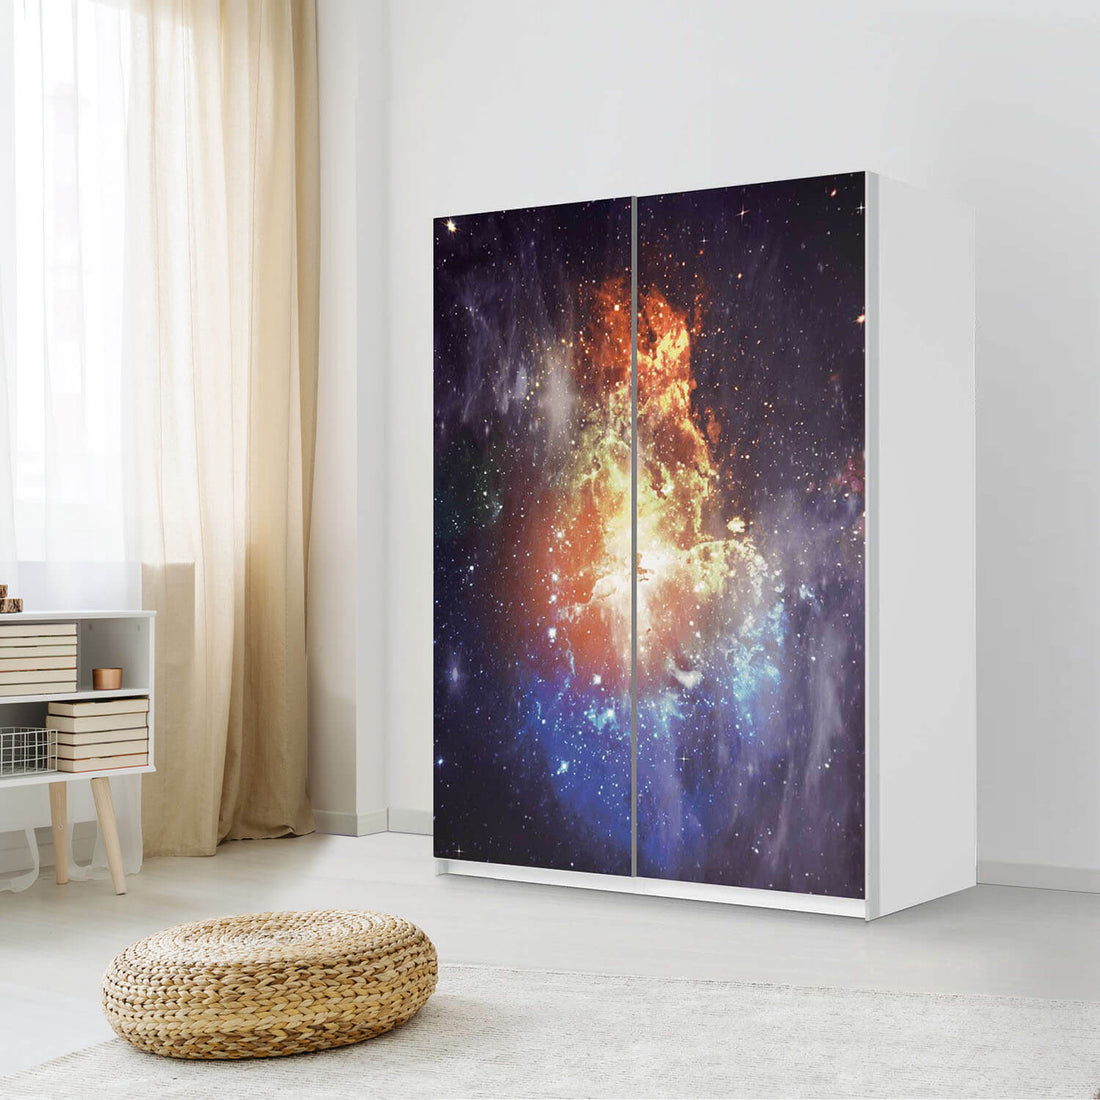 Möbel Klebefolie Nebula - IKEA Pax Schrank 201 cm Höhe - Schiebetür 75 cm - Schlafzimmer